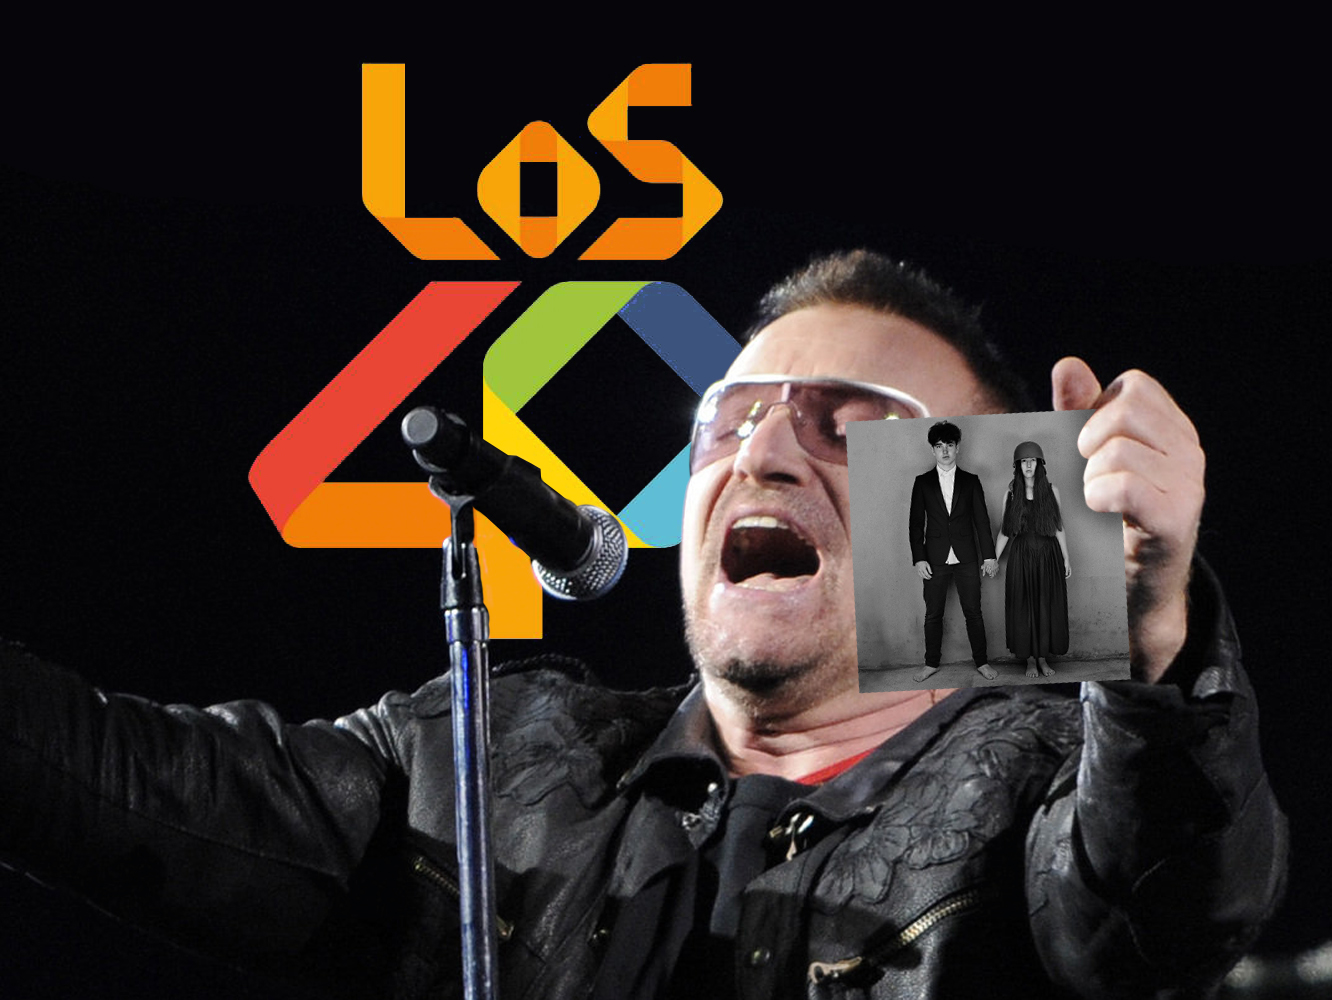  Este es un post que explica cuál es la portada del álbum de U2 a Los40